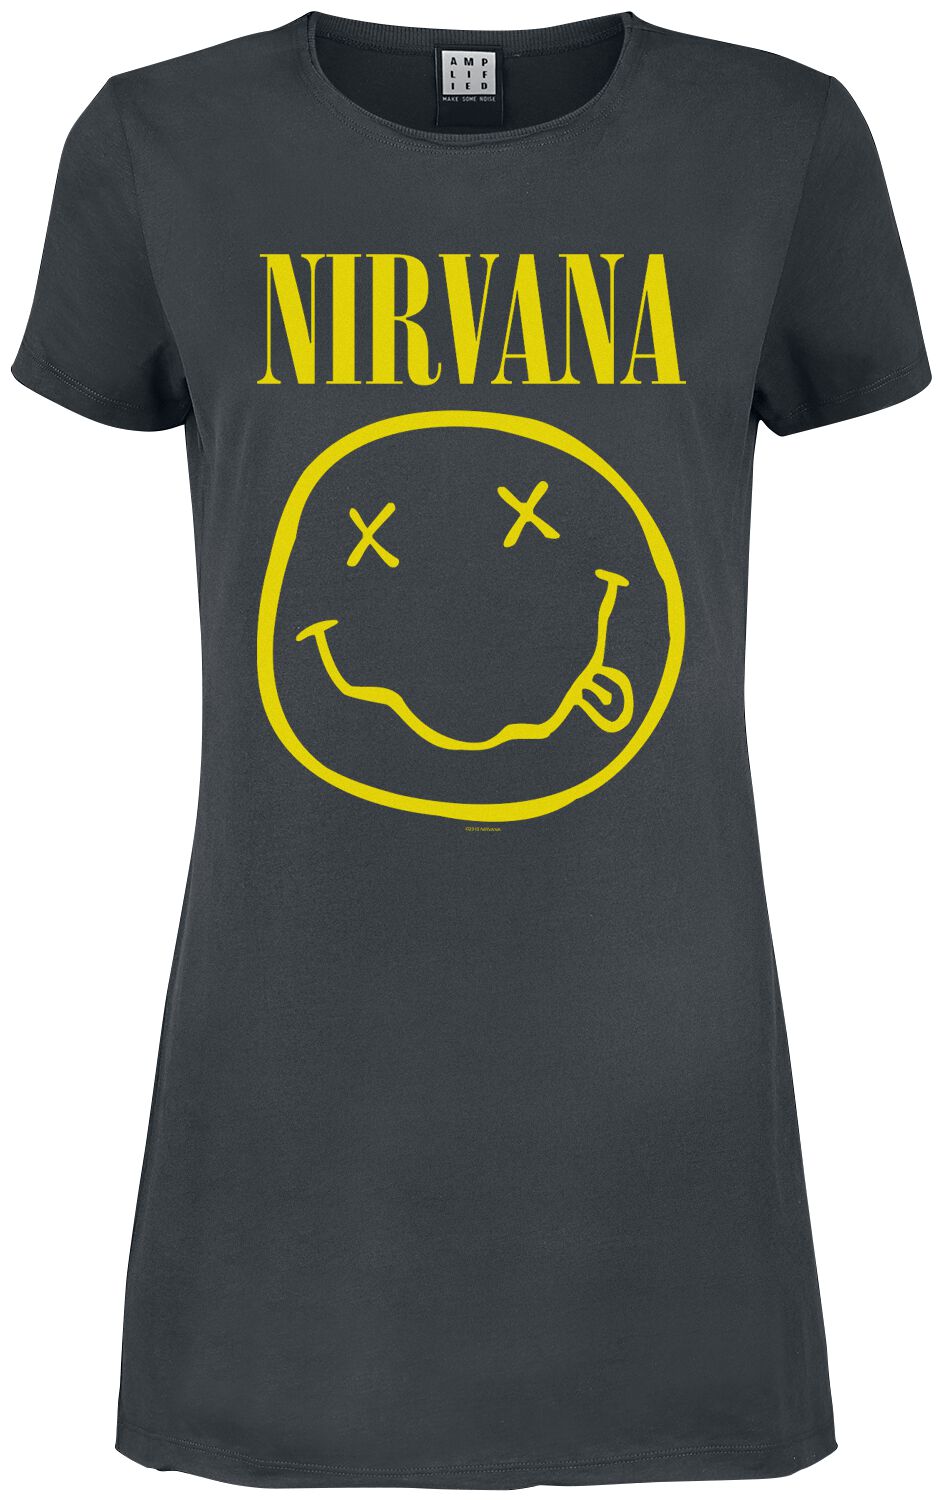 Nirvana Kurzes Kleid - Amplified Collection - Smiley - S bis XXL - für Damen - Größe L - charcoal  - Lizenziertes Merchandise!